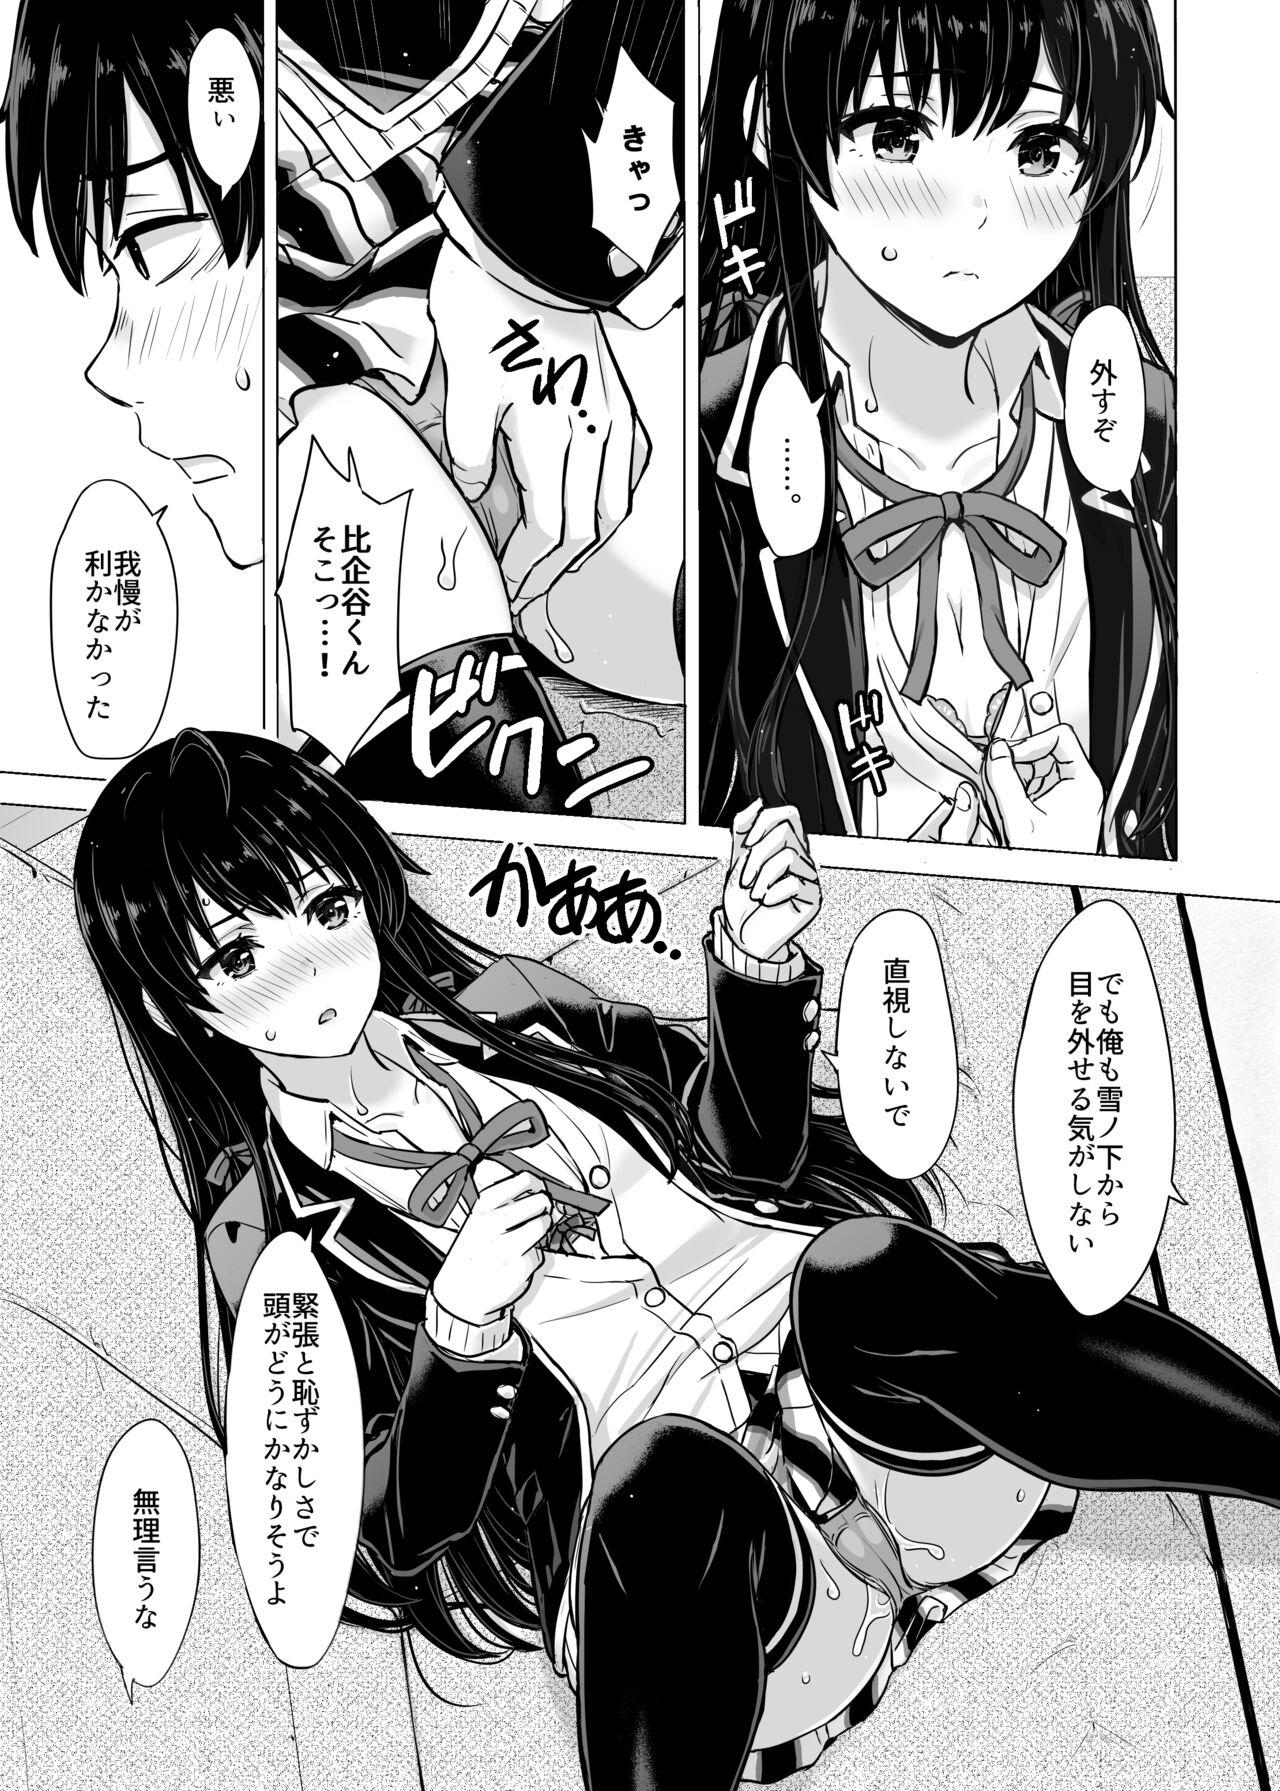 Toilet Yukinon Manga - Yahari ore no seishun love come wa machigatteiru Orgame - Picture 3